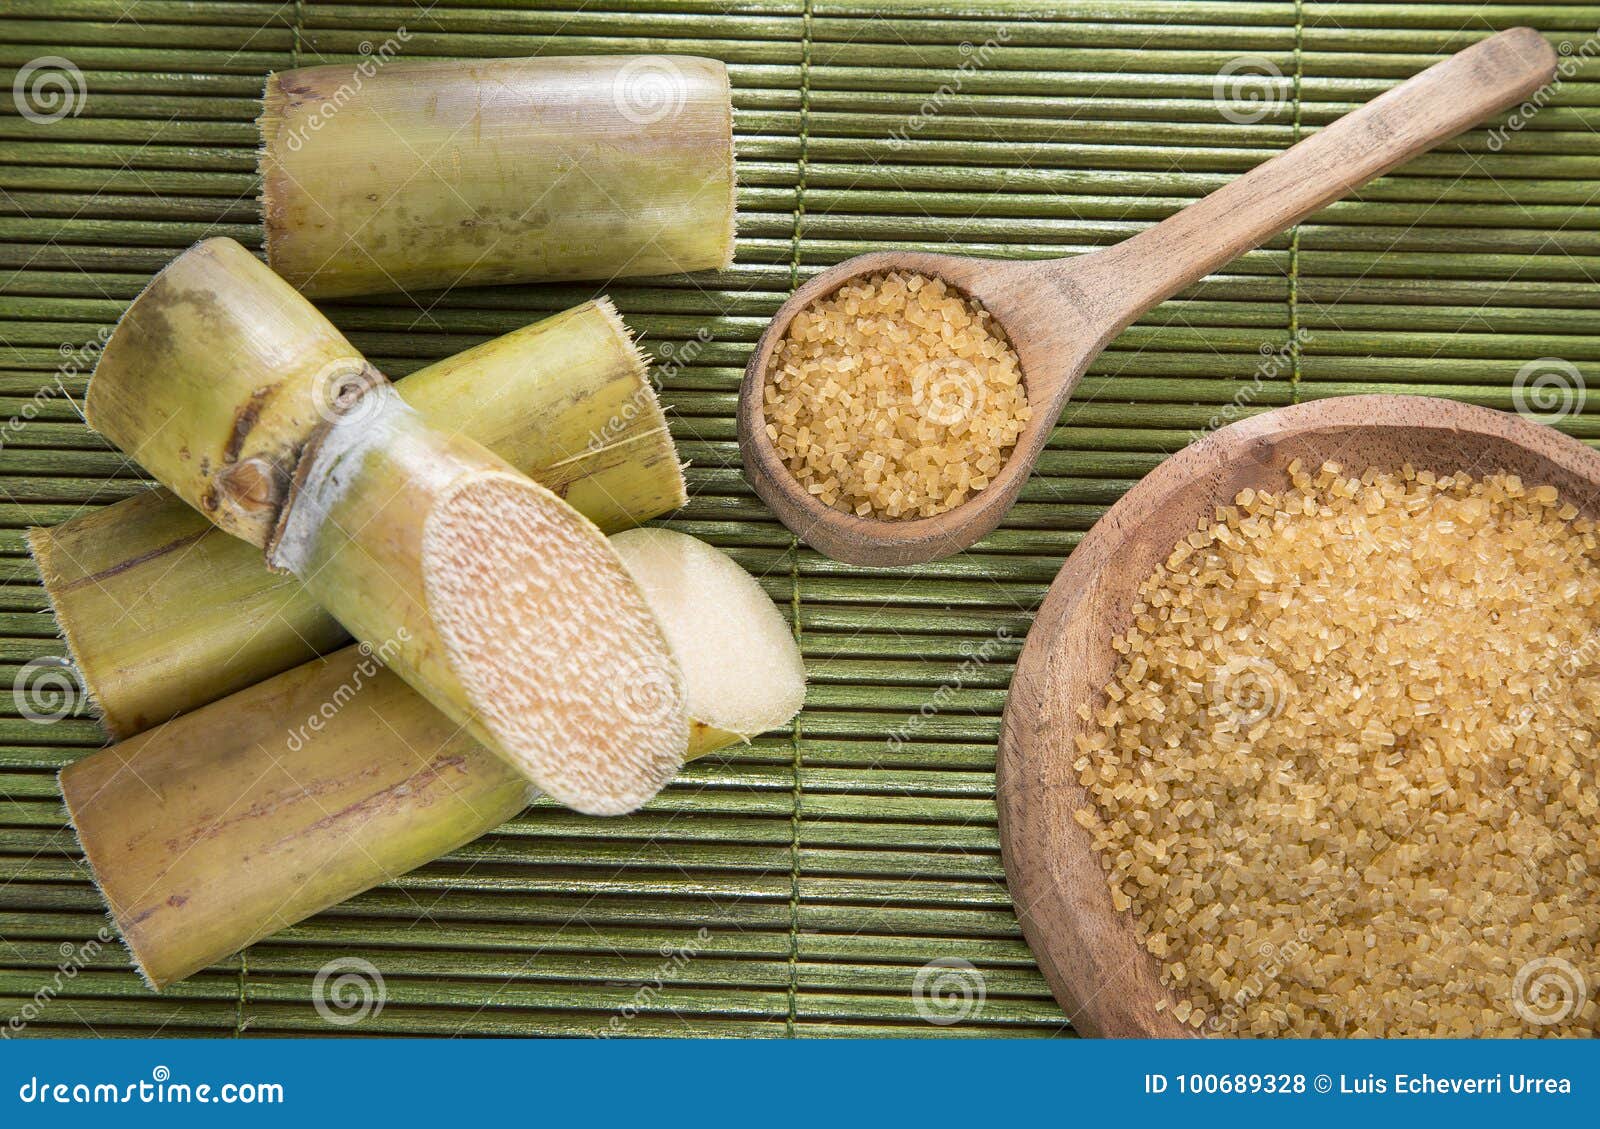 Сахарный тростник содержит 9. Сахарный тростник в Индии. Сахарный тростник в Египте. Сахарный тростник сахар. Сахар из сахарного тростника.